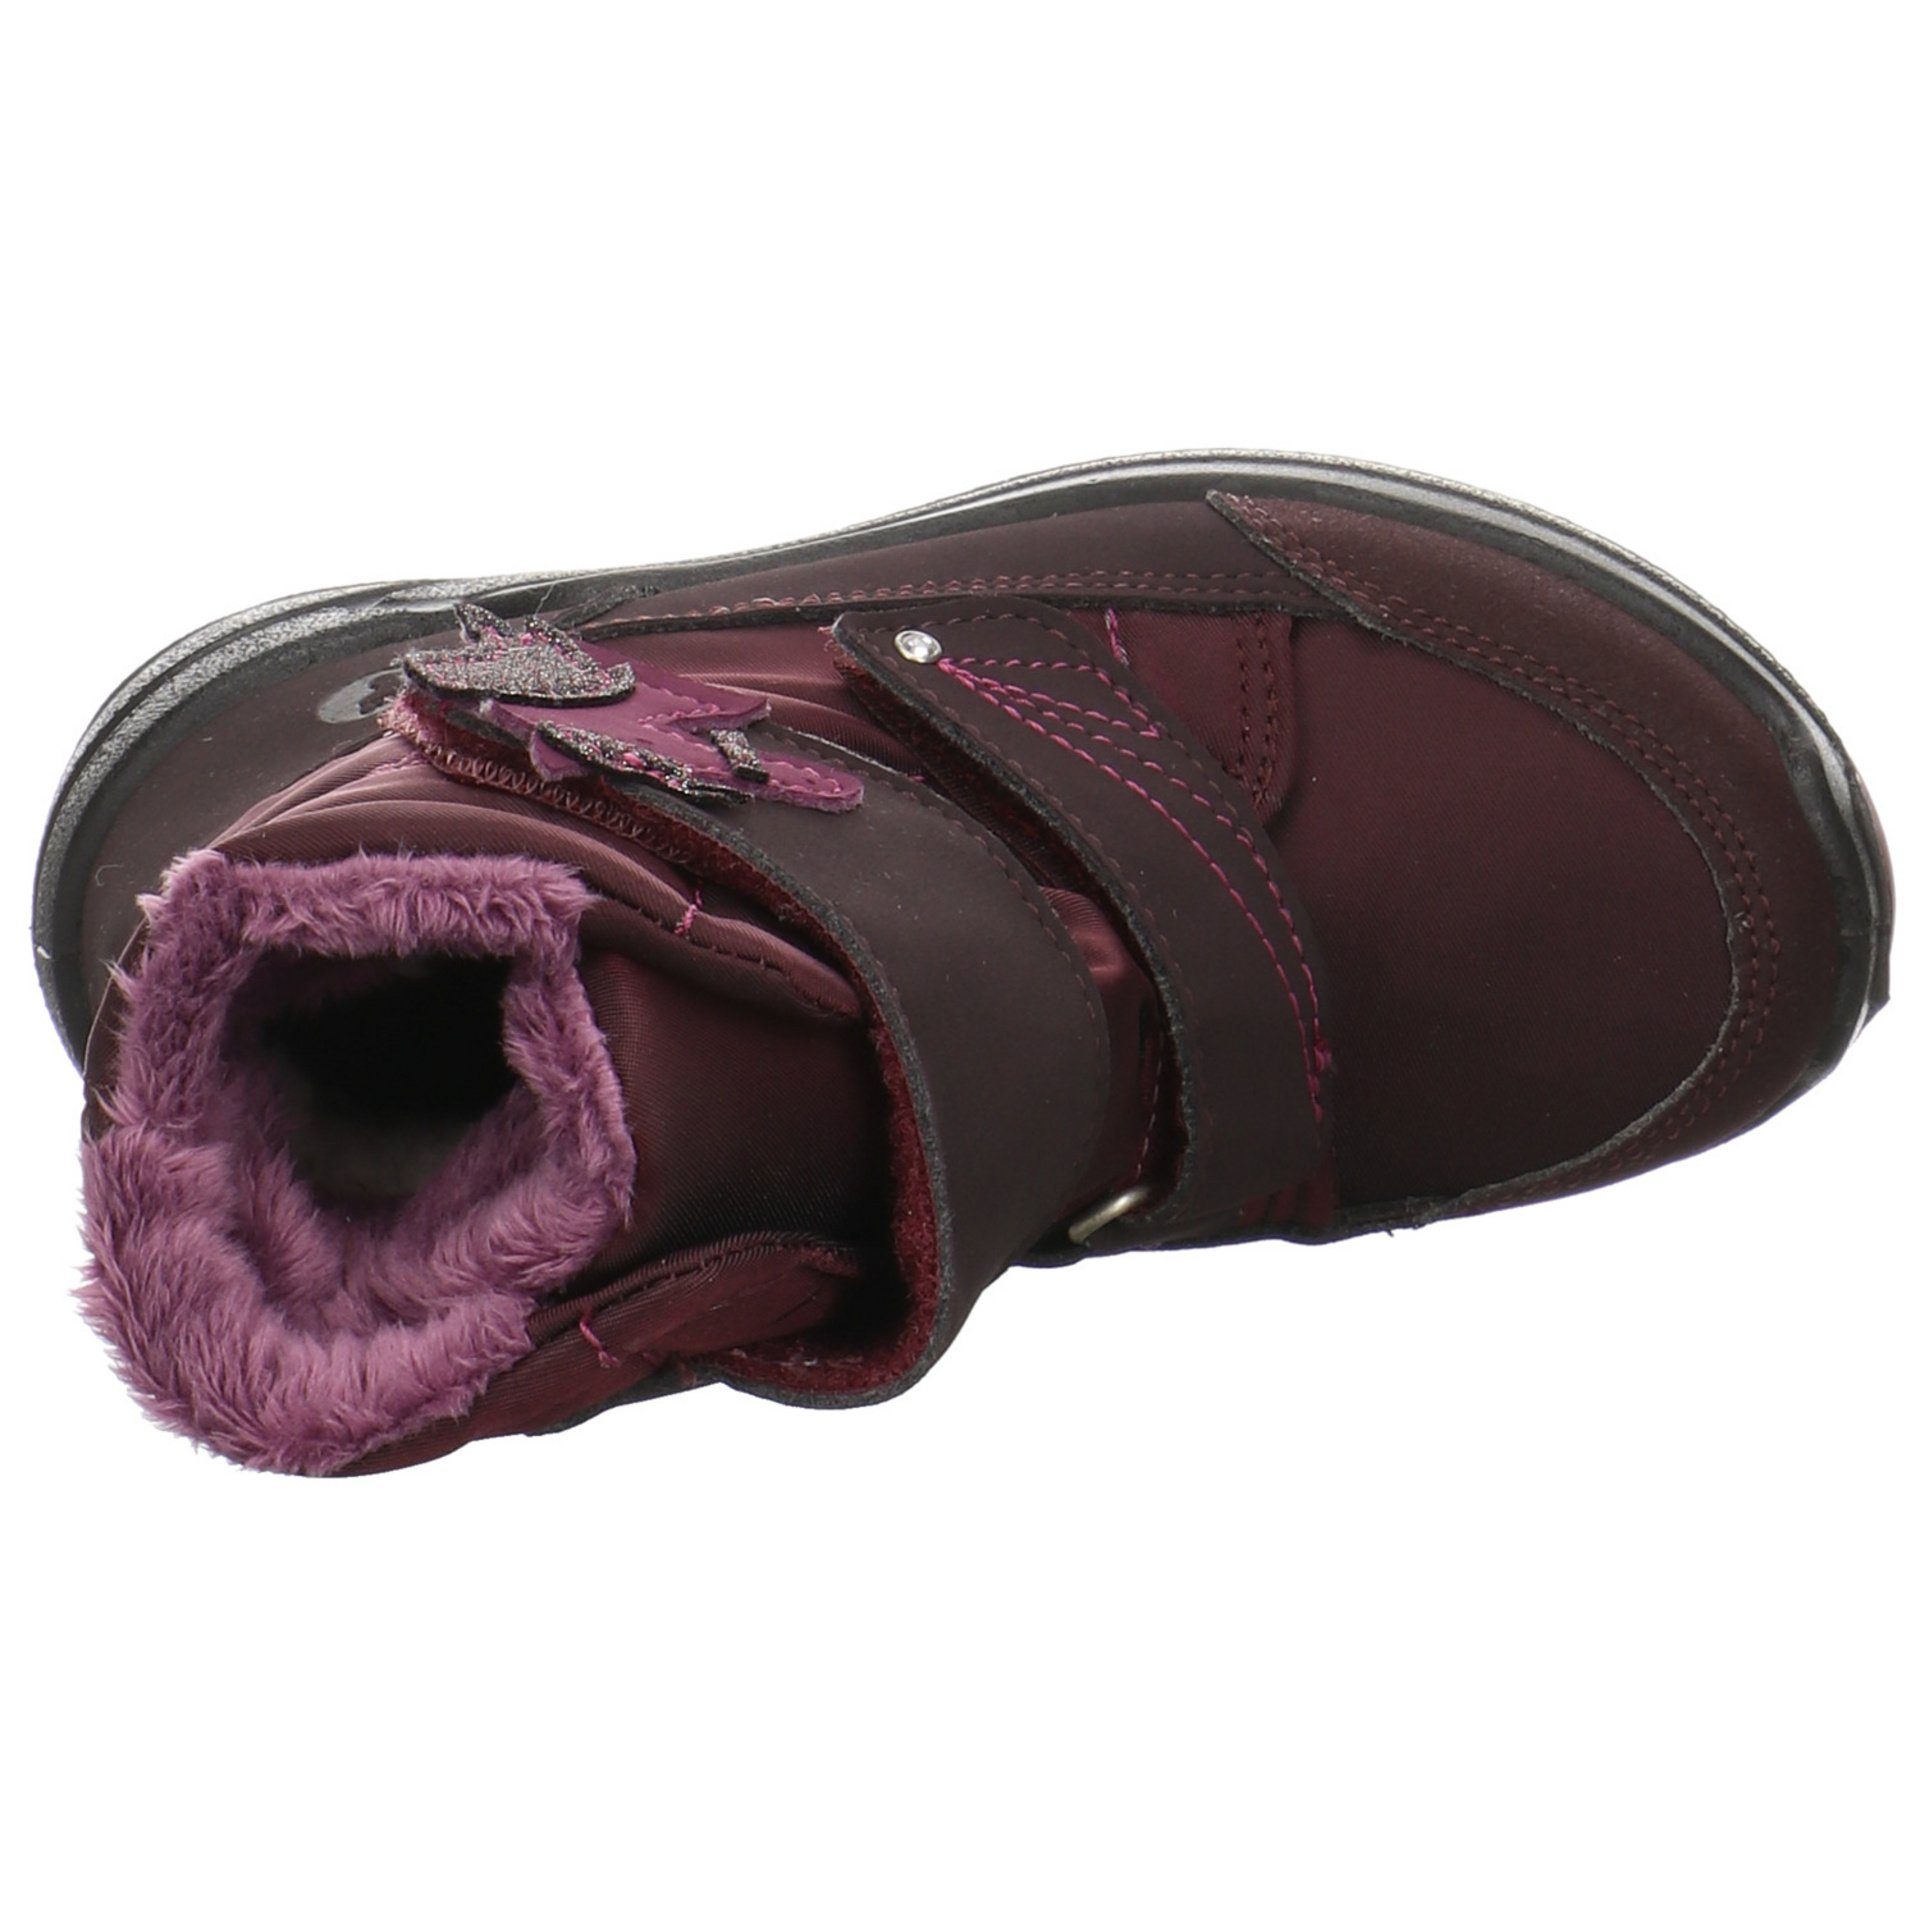 Boots Garei Textil uni (380) Stiefel Textil brombeer Ricosta